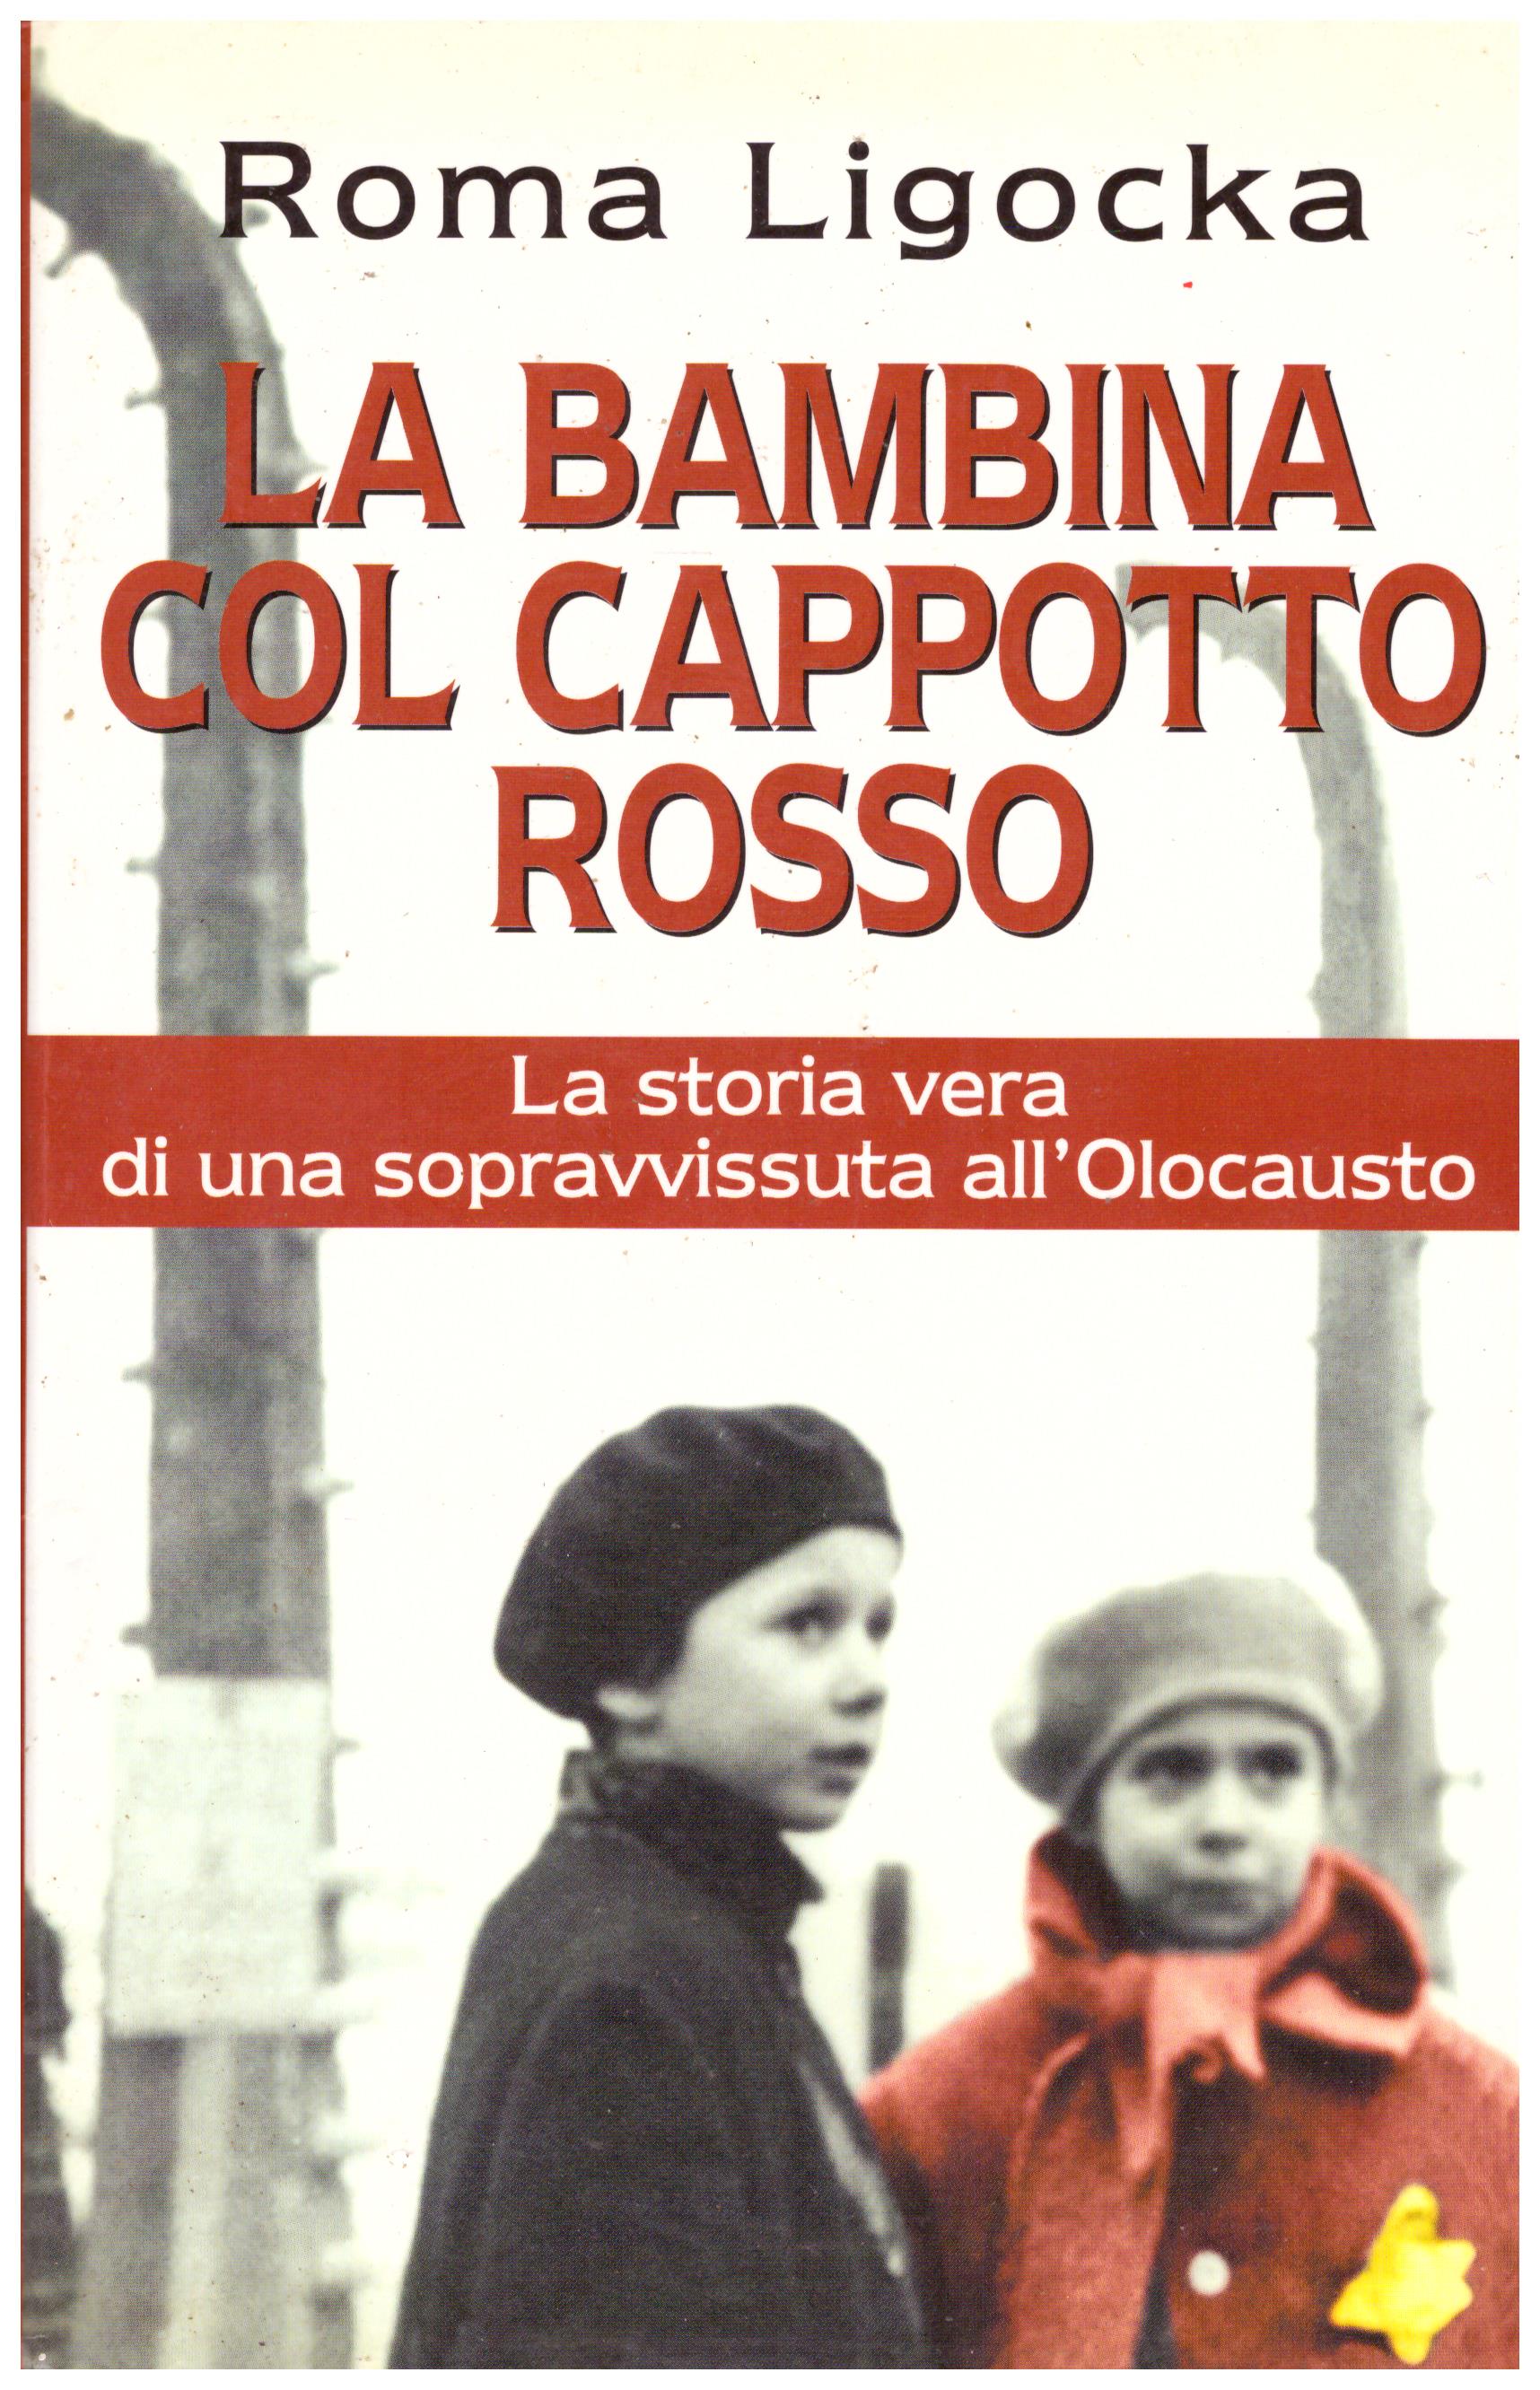 Titolo: La bambina col cappotto rosso Autore: Roma Ligocka Editore: Mondadori, 2001